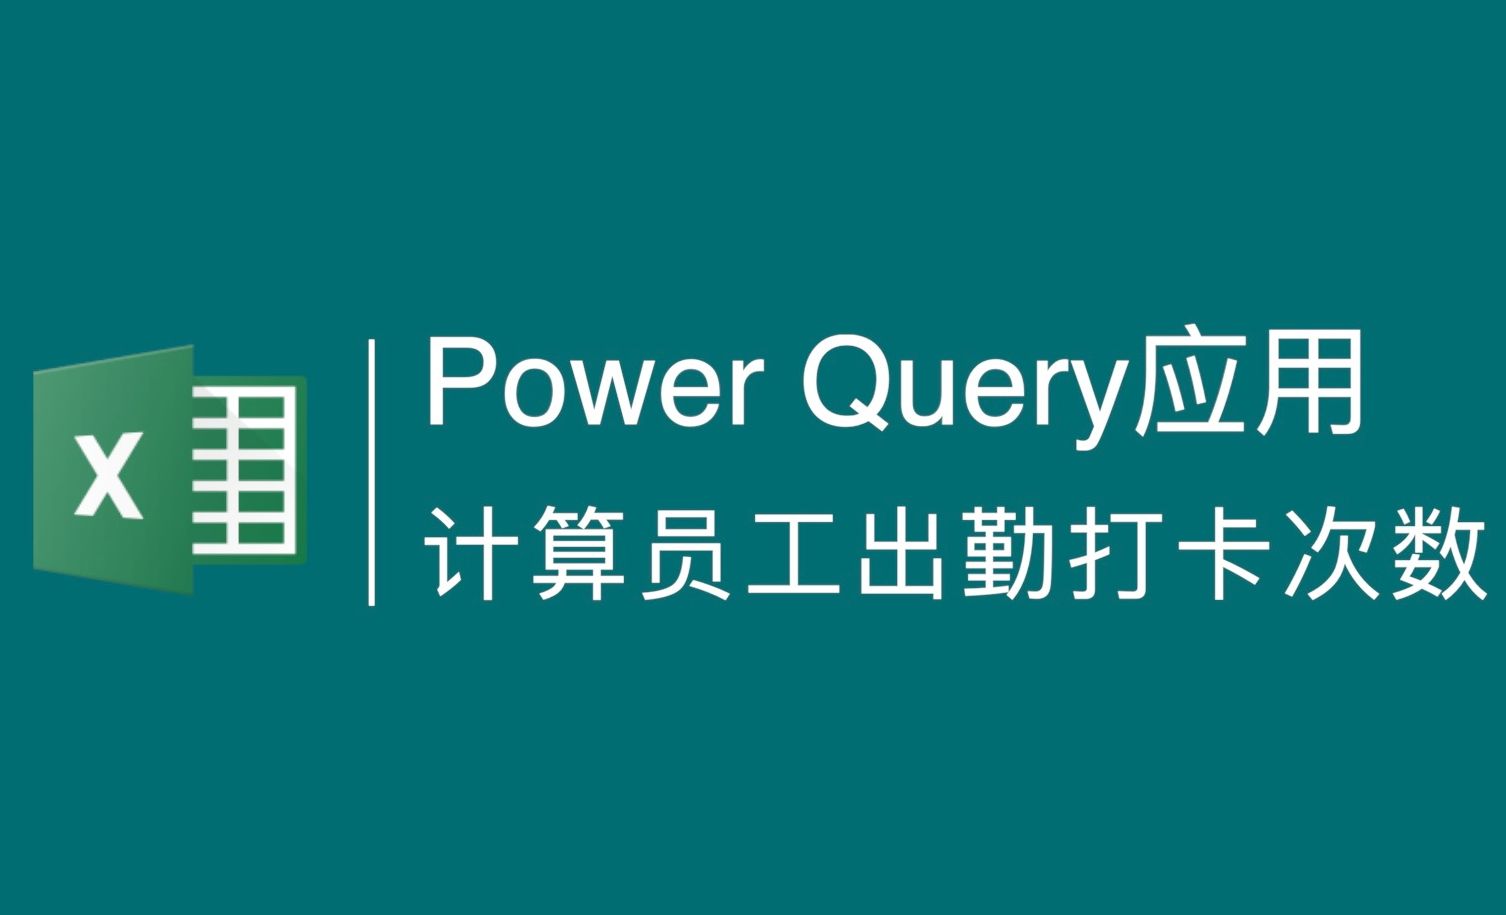 Power Query应用：计算员工每日出勤打卡次数